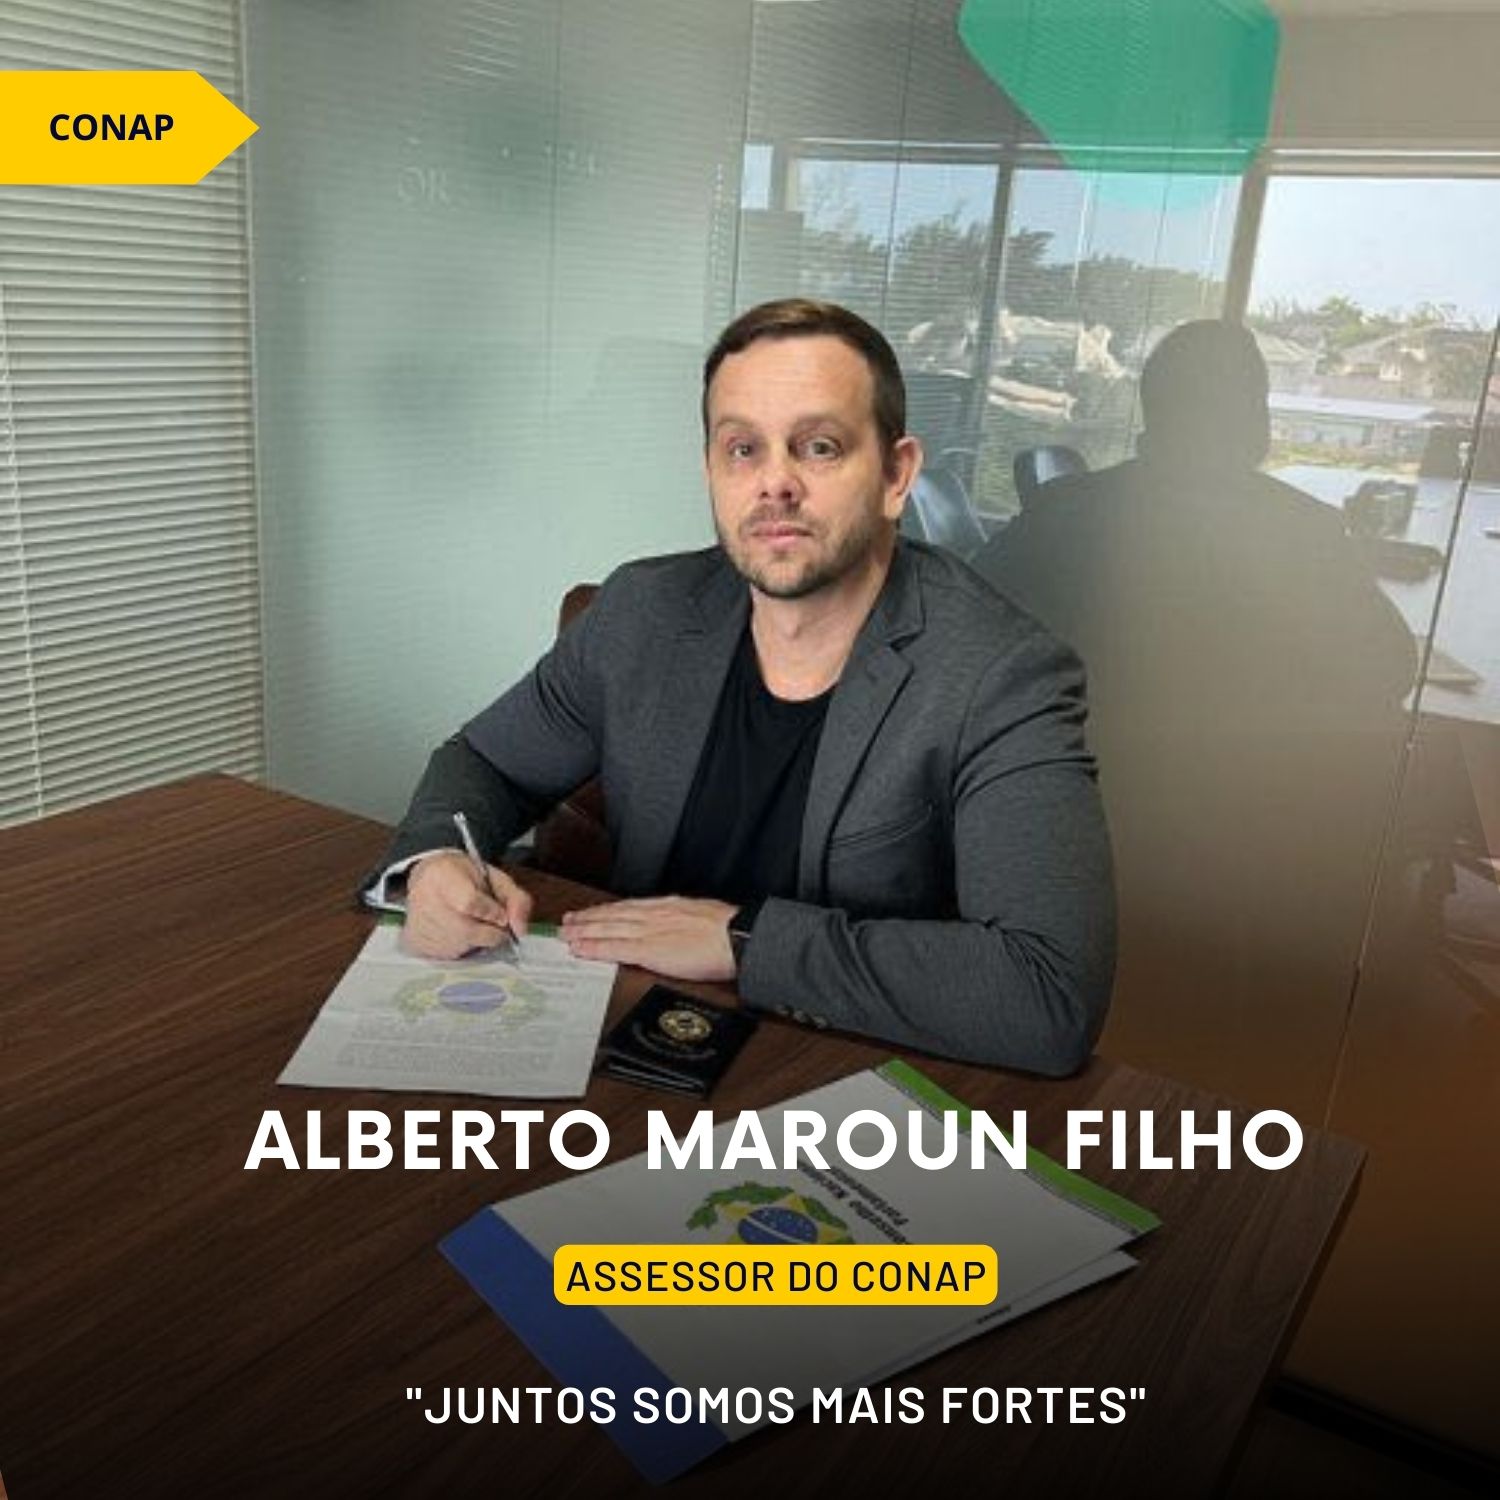 Nomeação de Alberto Maroun Filho como Assessor do CONAP